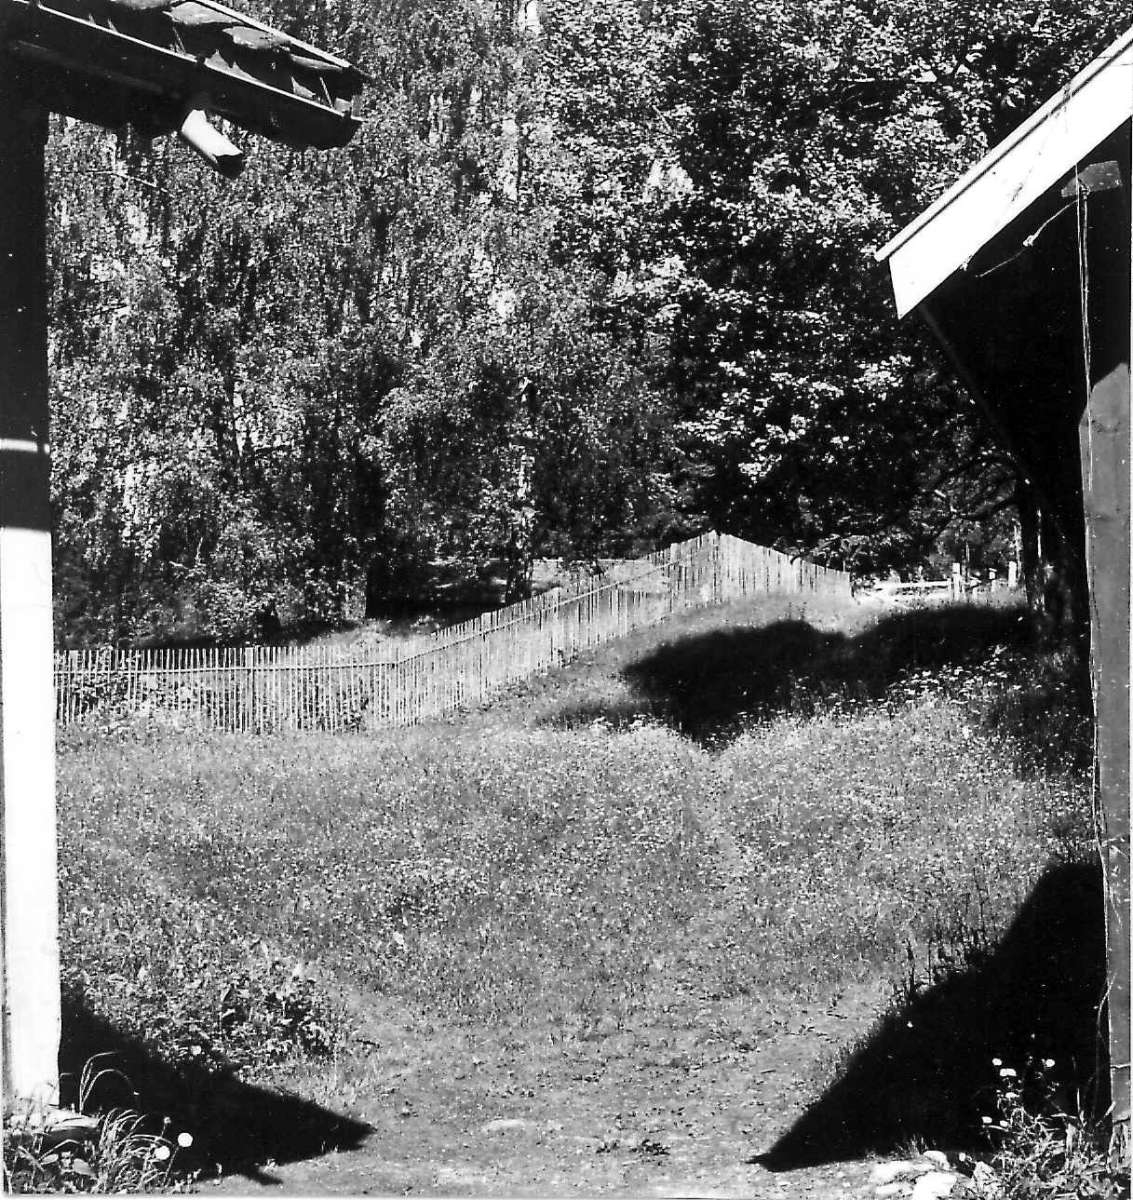 Viken, Hurdal, Akershus 1954. Tomt mellom to hus. Storgårdsundersøkelser ved dr. Engelstad i 1954.
